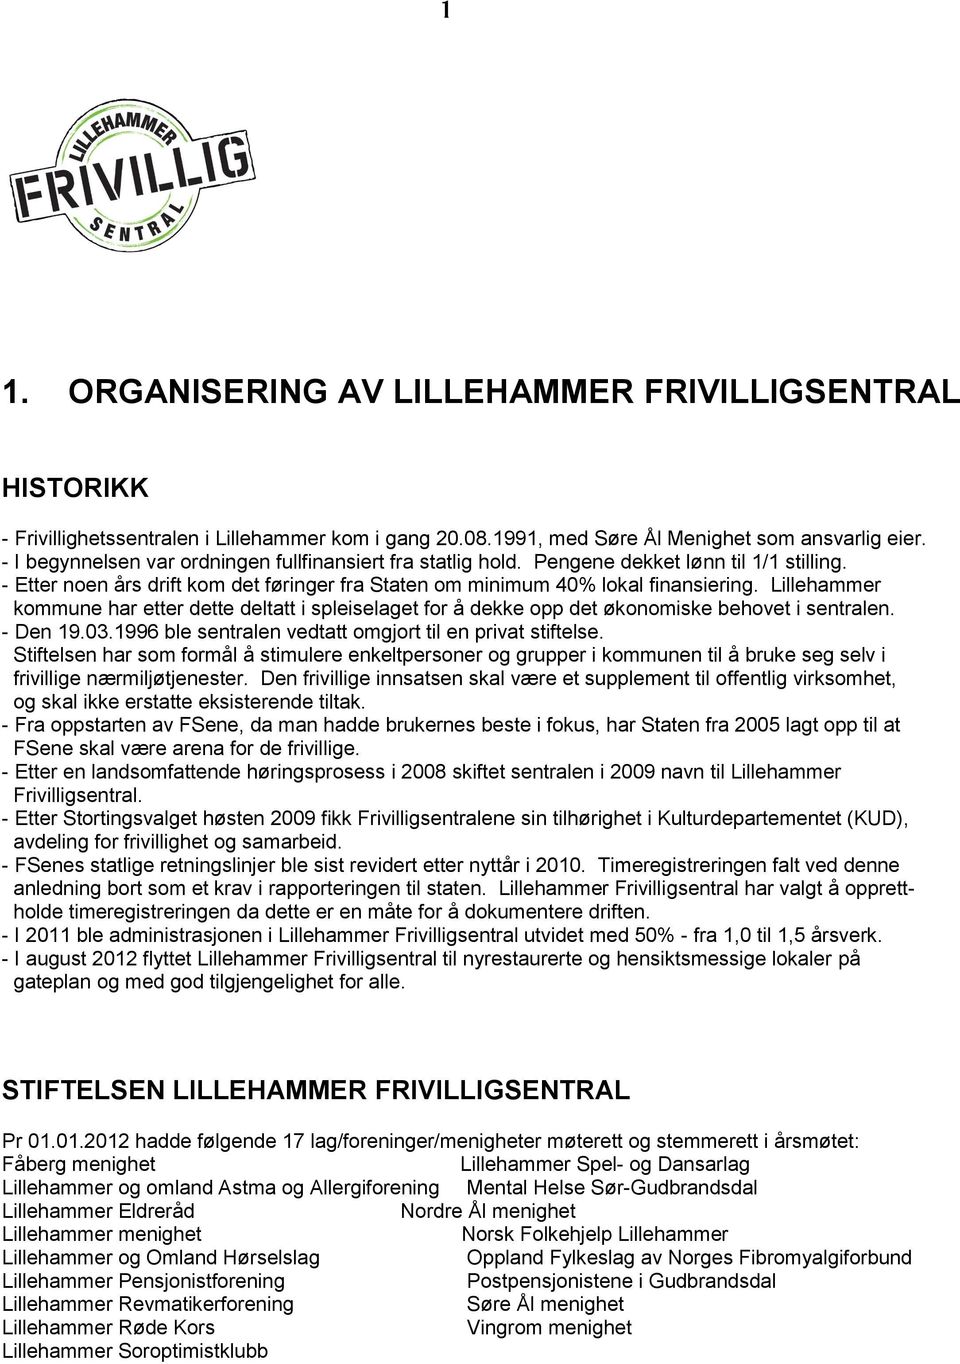 Lillehammer kommune har etter dette deltatt i spleiselaget for å dekke opp det økonomiske behovet i sentralen. - Den 19.03.1996 ble sentralen vedtatt omgjort til en privat stiftelse.